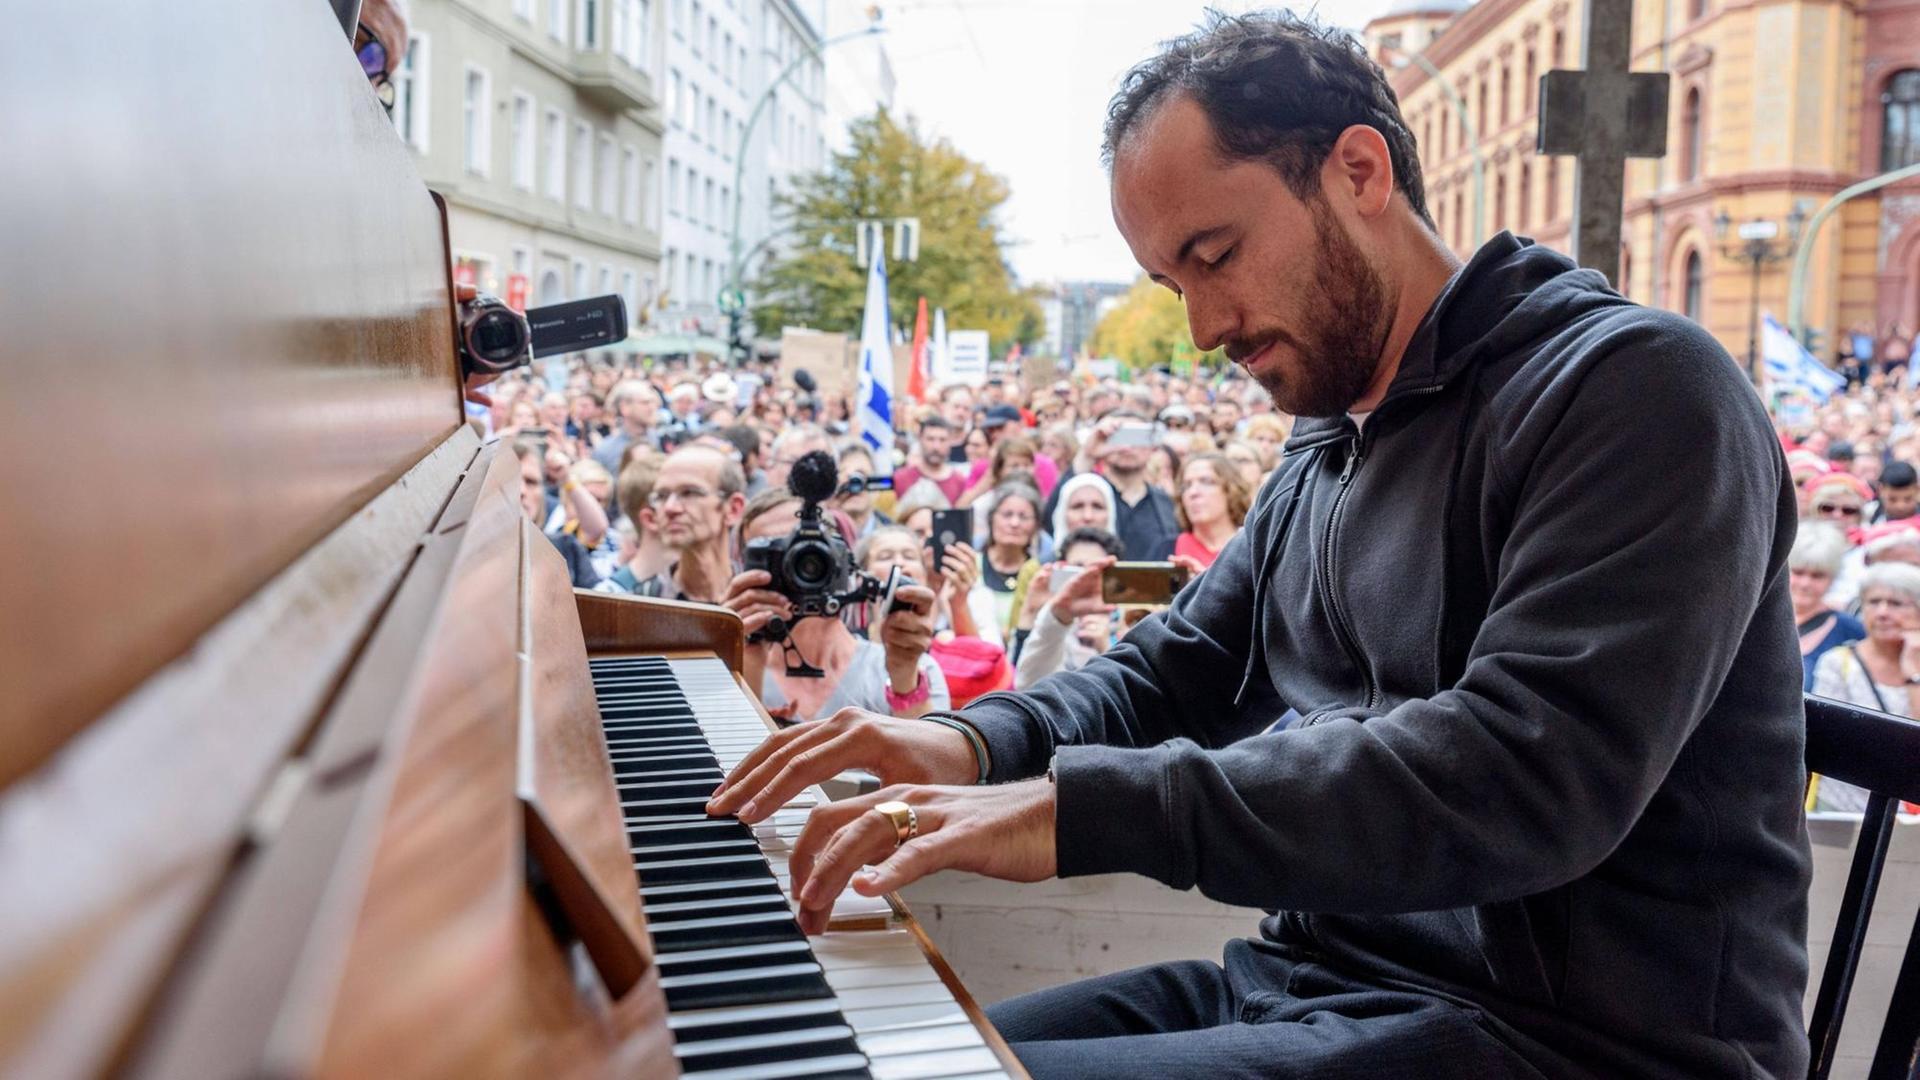 Pianist Igor Levit am Klavier im Freien vor einer Menschenmenge in einer Häuserschlucht.